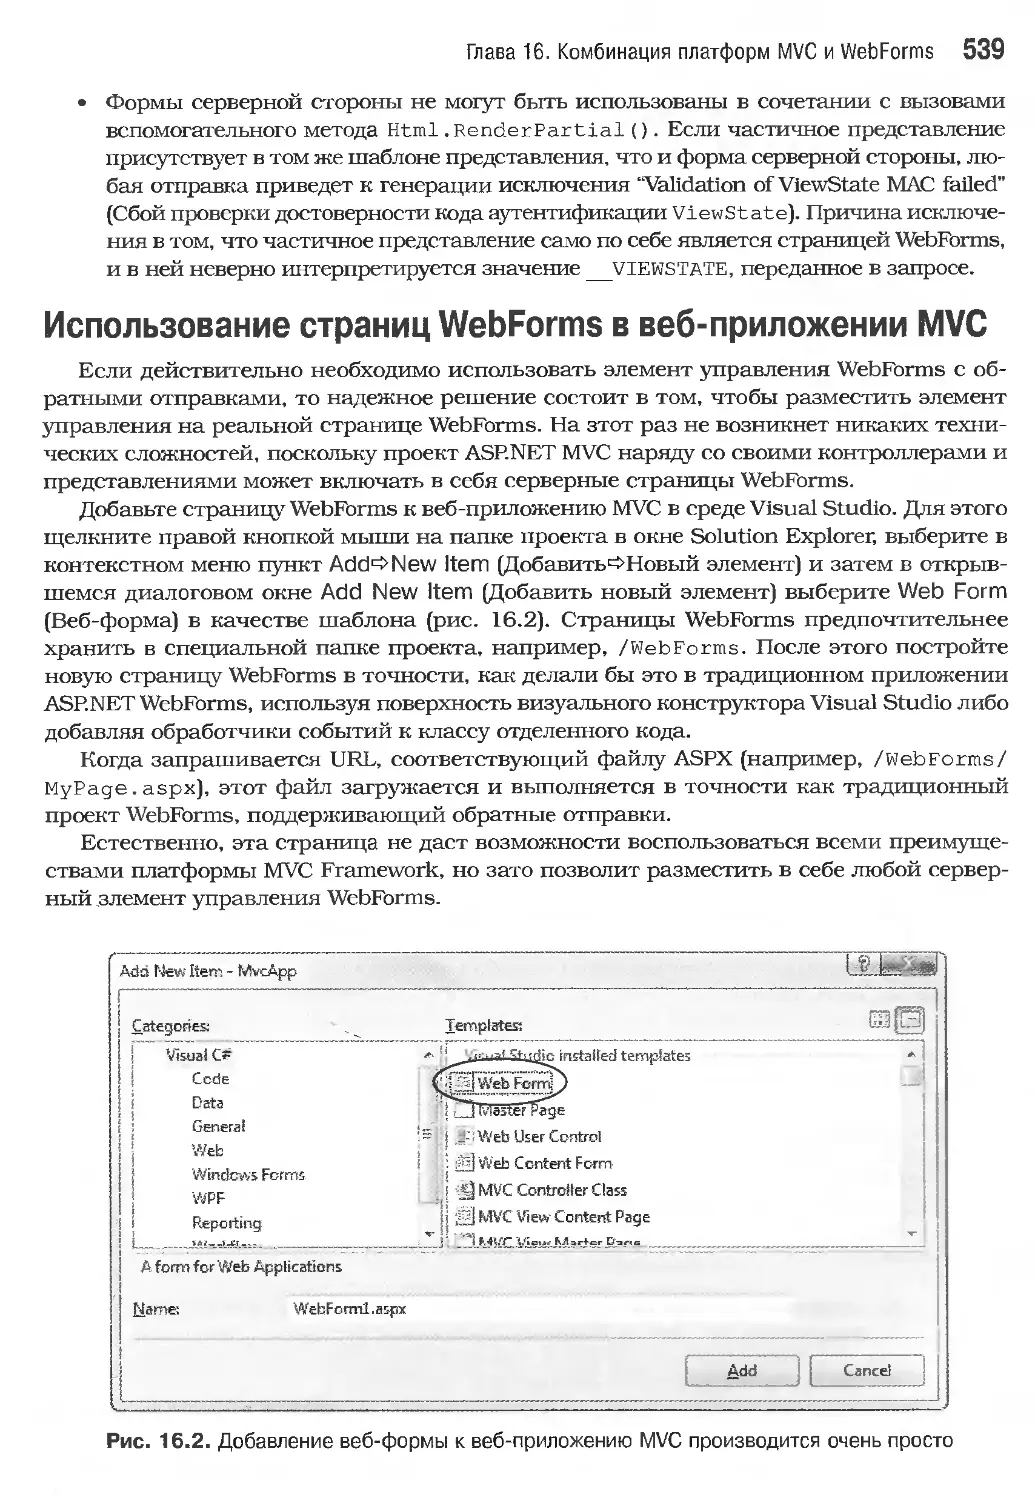 Использование страниц WebForms в веб-приложении MVC